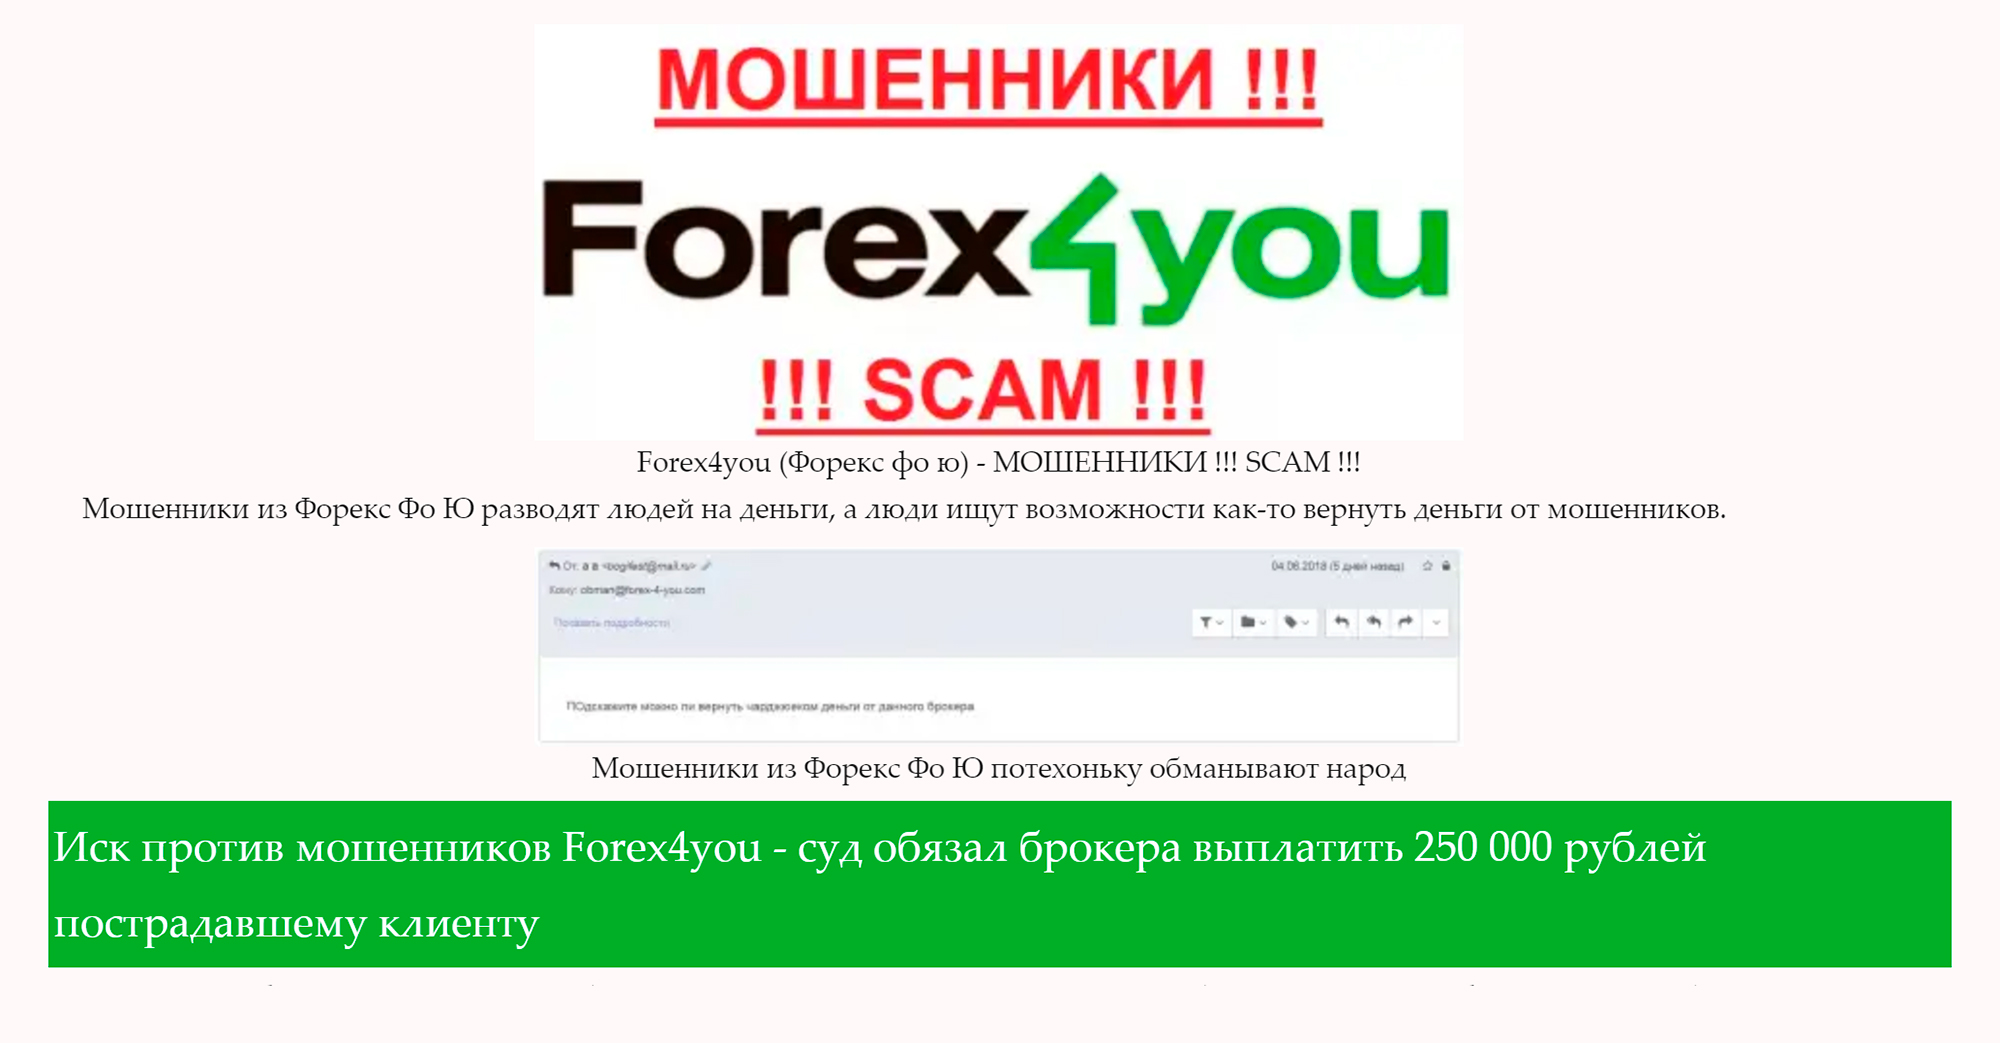 Сайт forex-4-you.com пишет, что брокер с одноименным названием судился со своим клиентом и проиграл